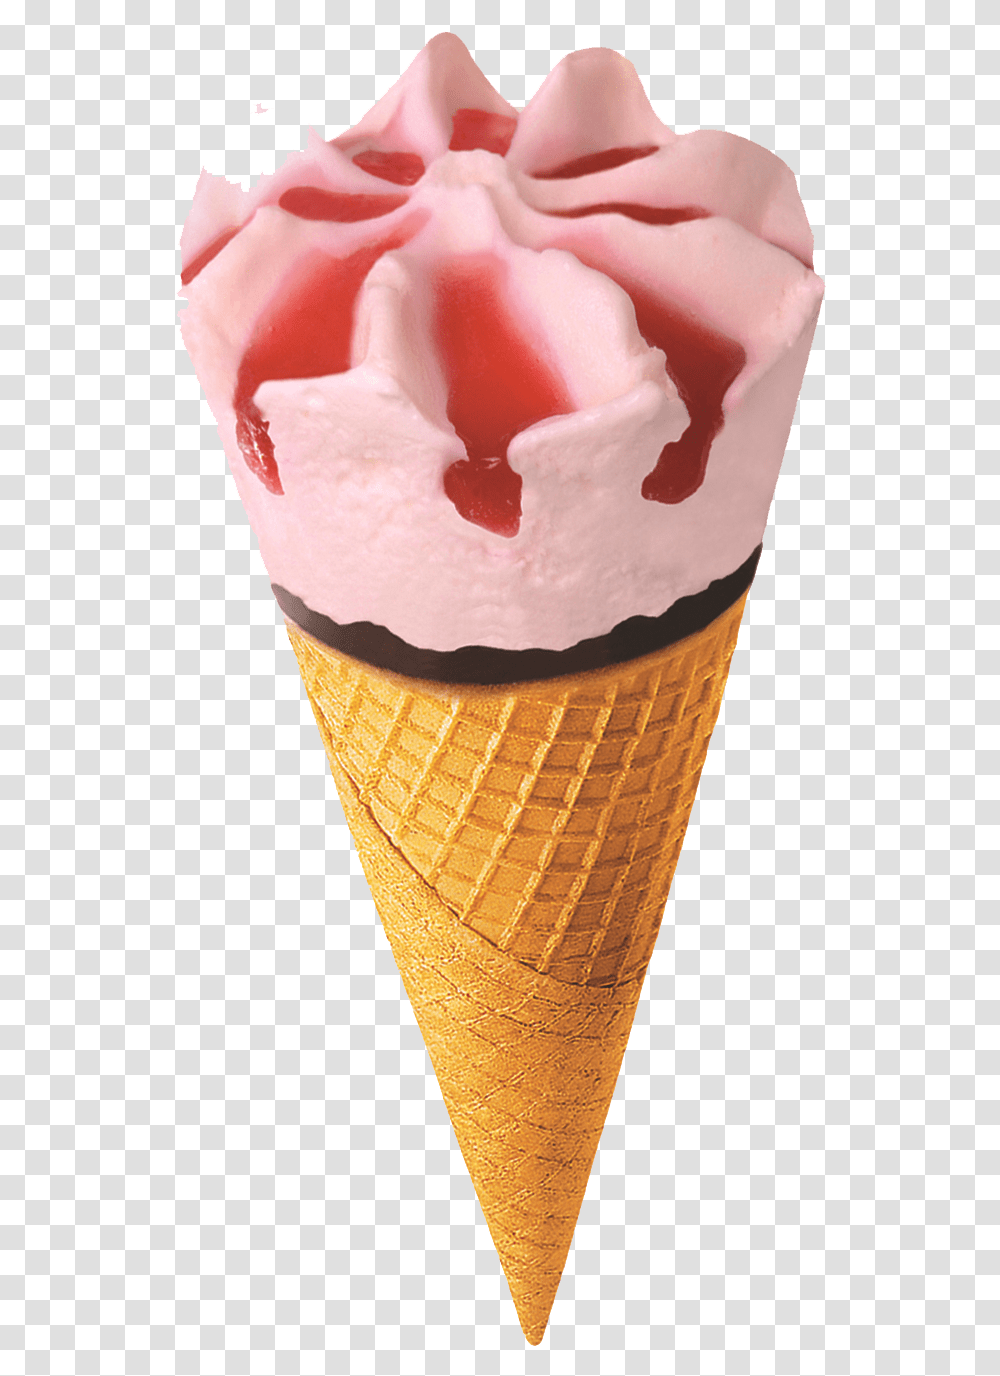 Ice Cream Image Ice Cream Images, Dessert, Food, Creme, Rose Transparent Png